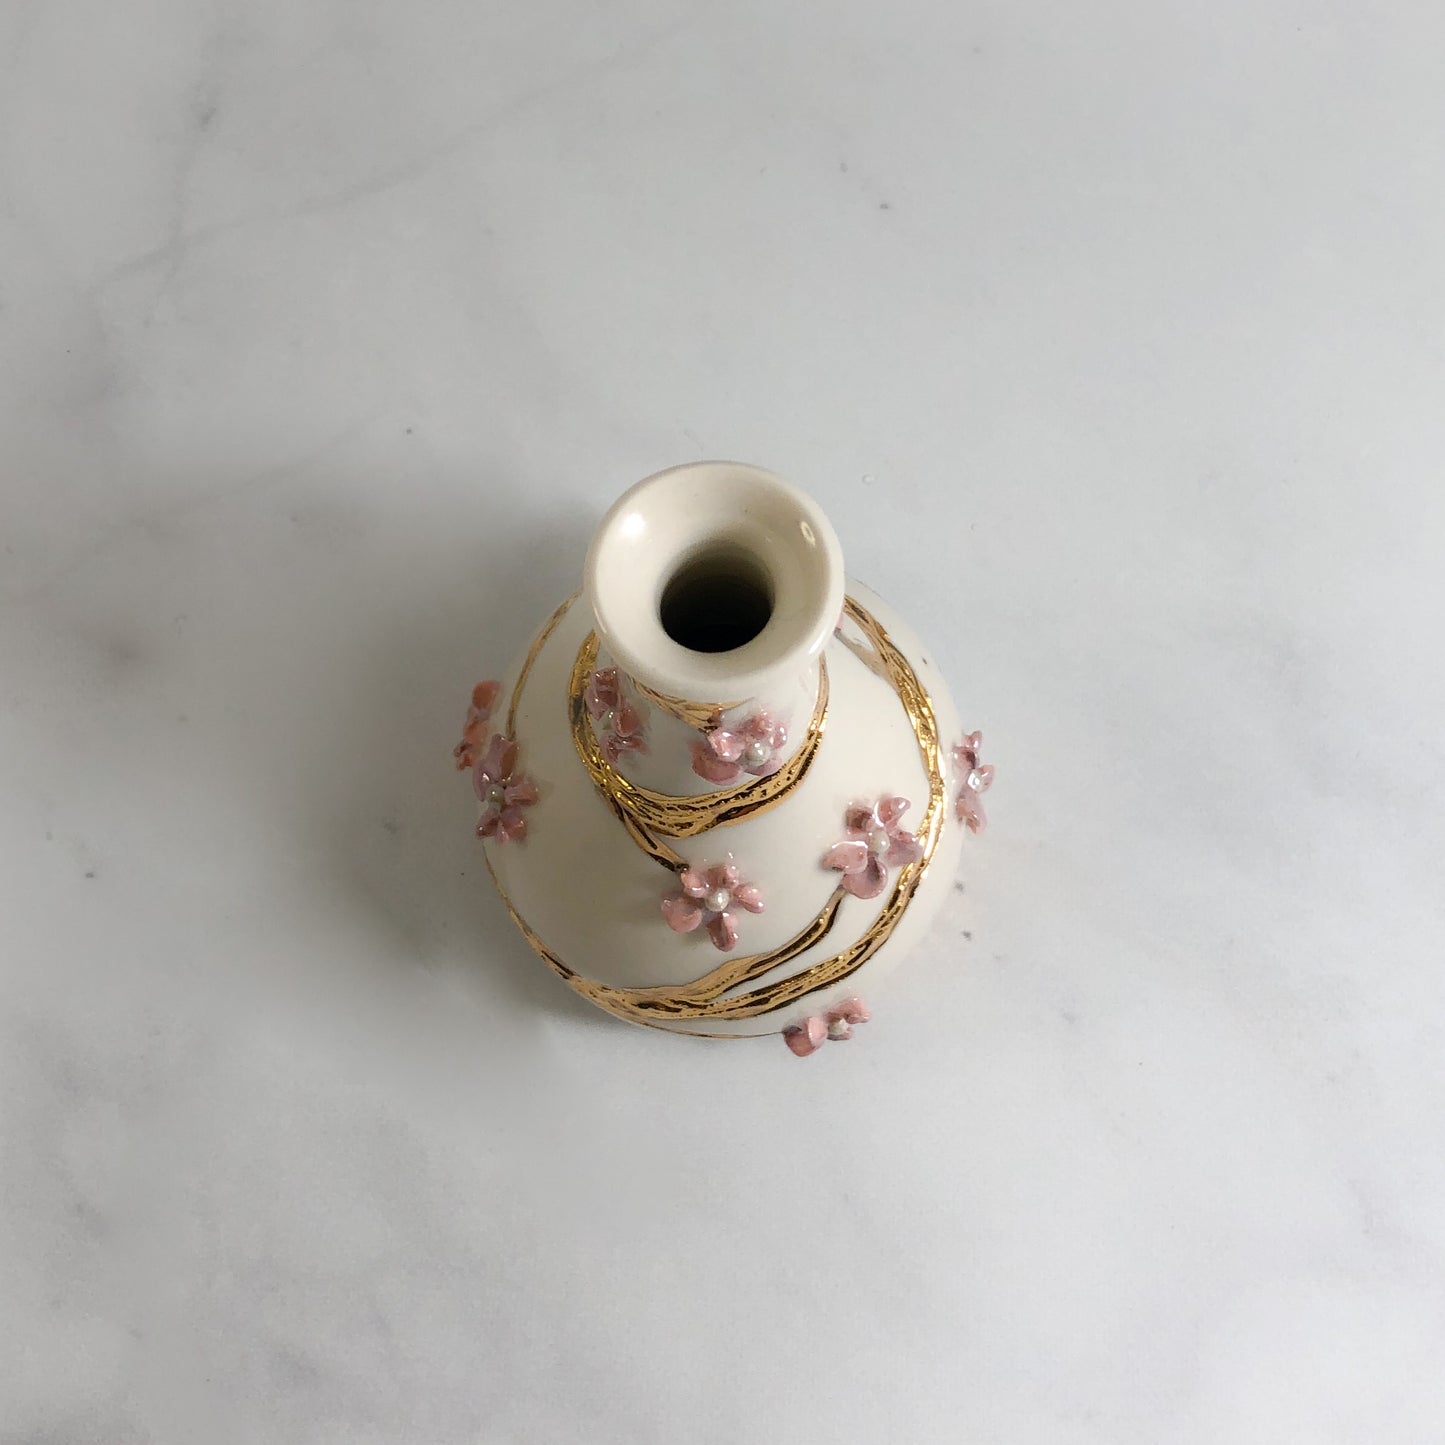 Imperfect & Beautiful: bud vase